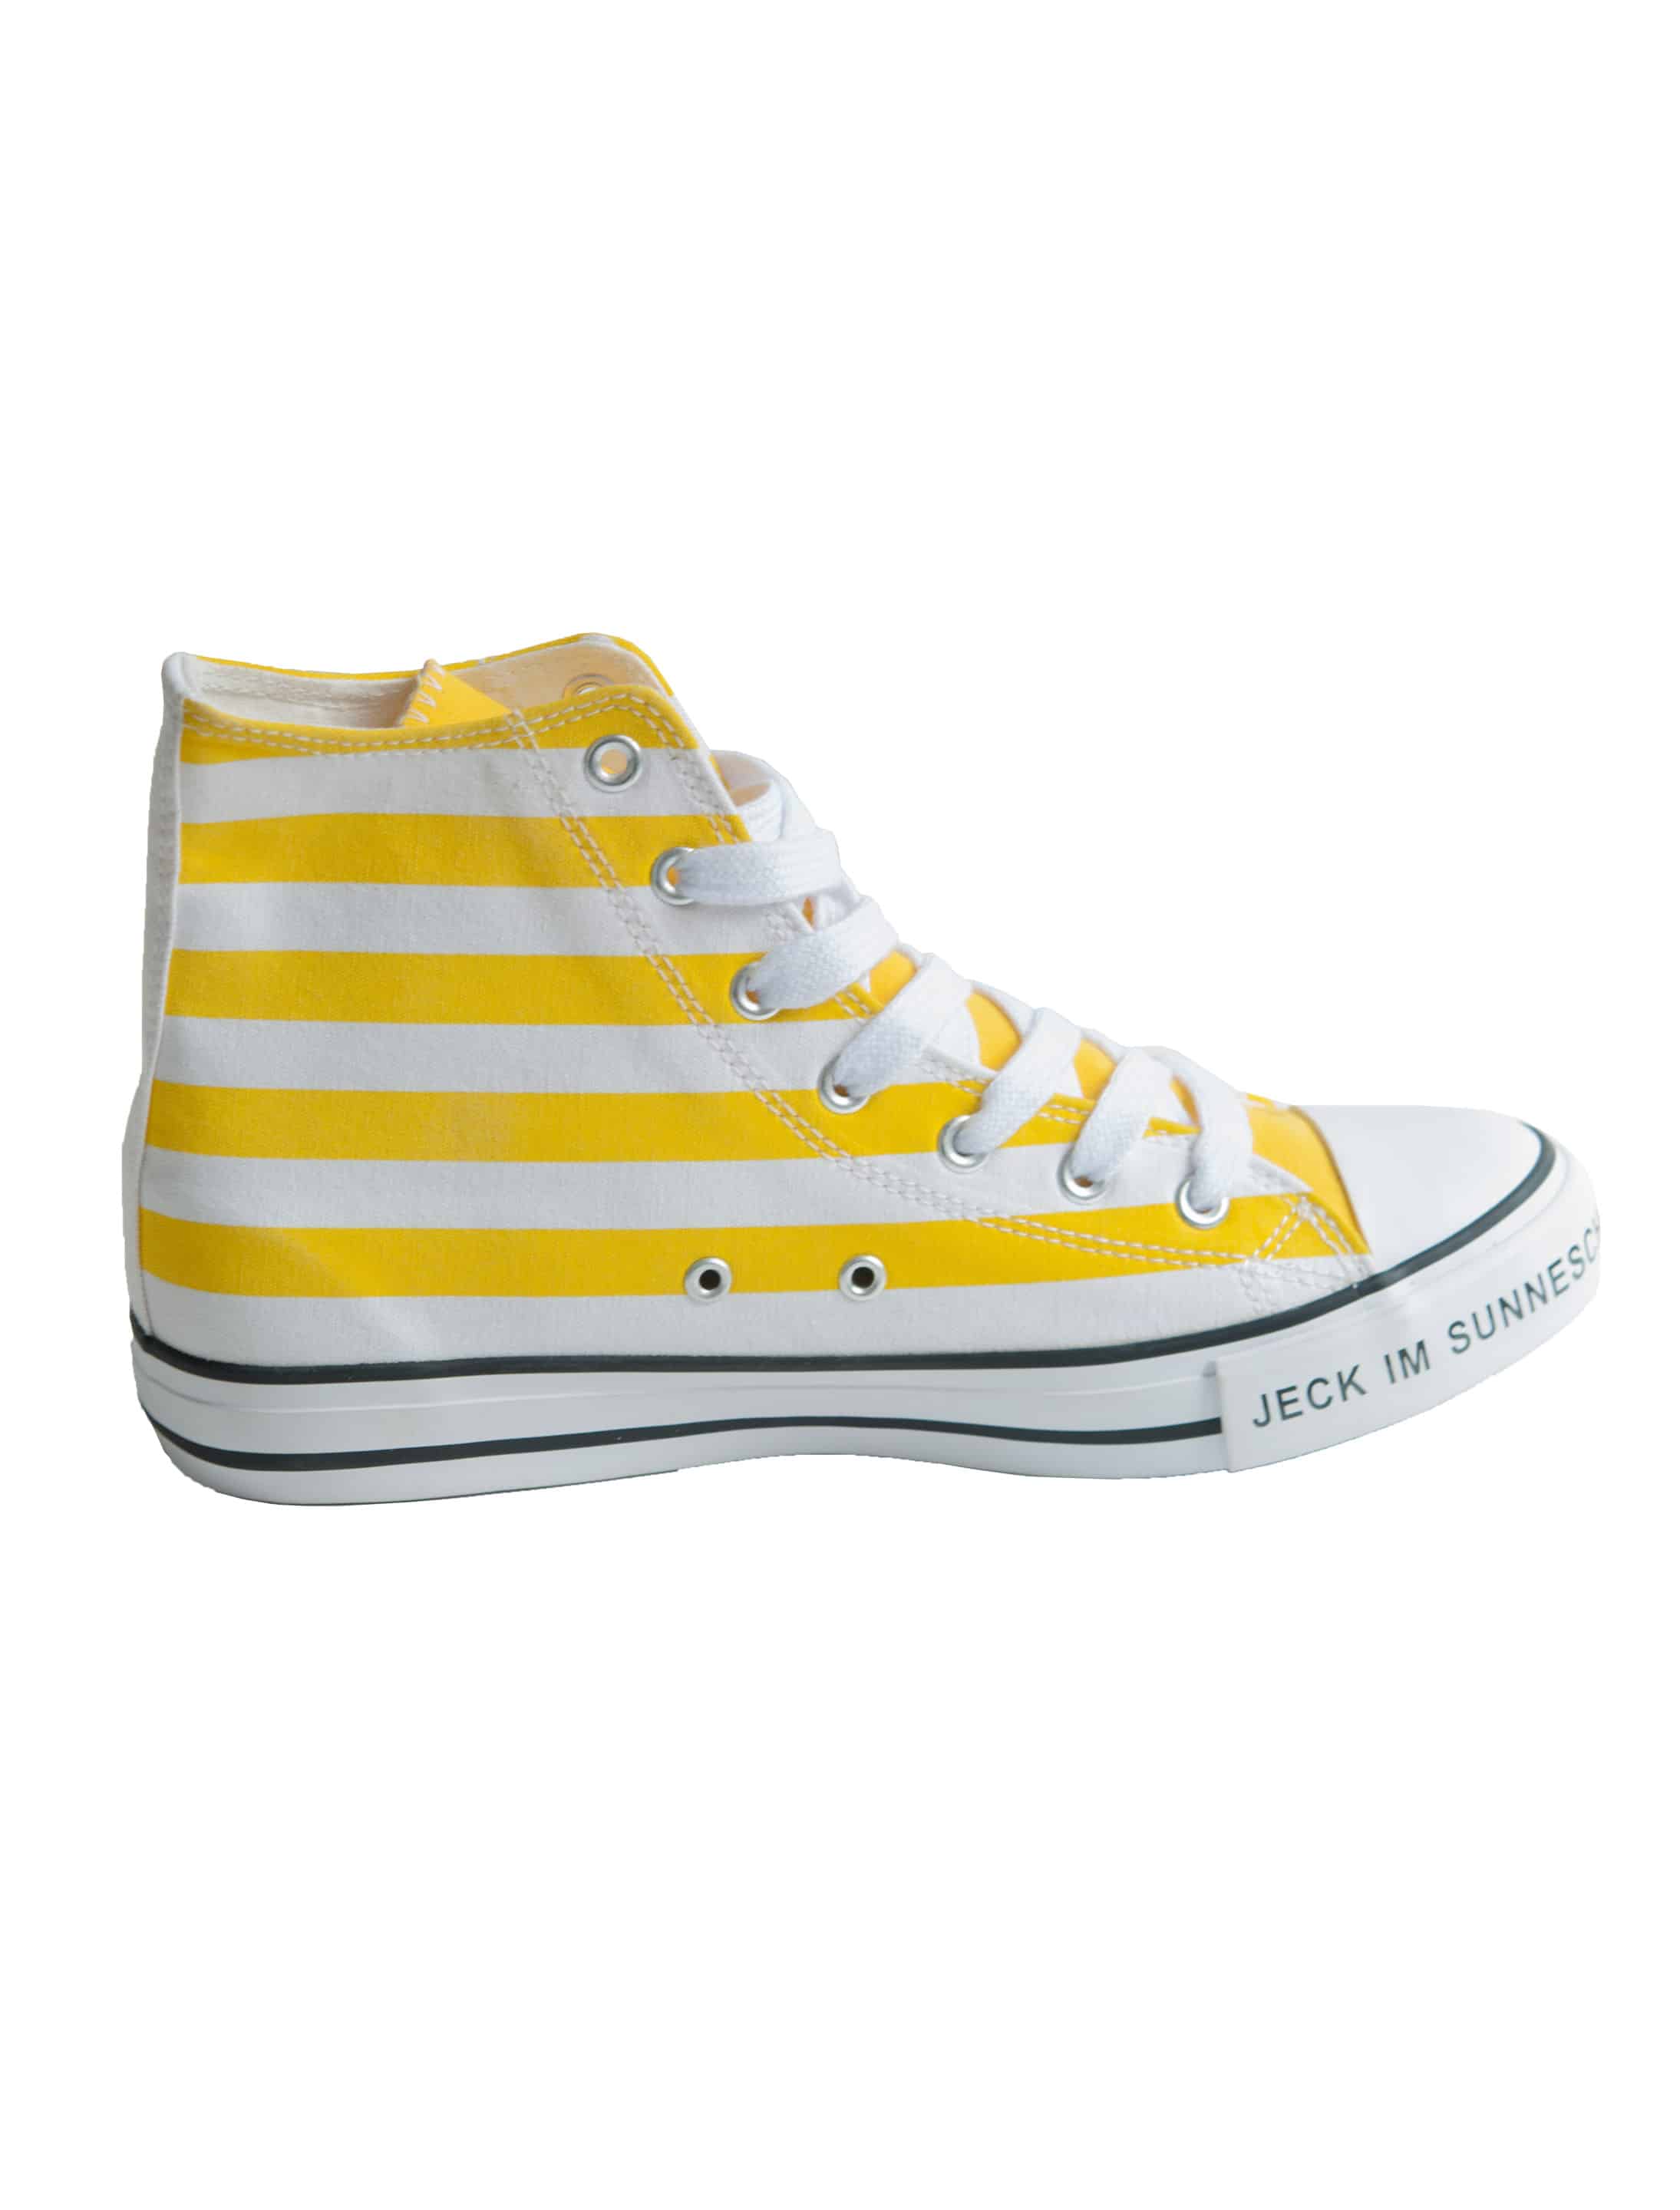 Schuhe Jeck im Sunnesching gelb 38